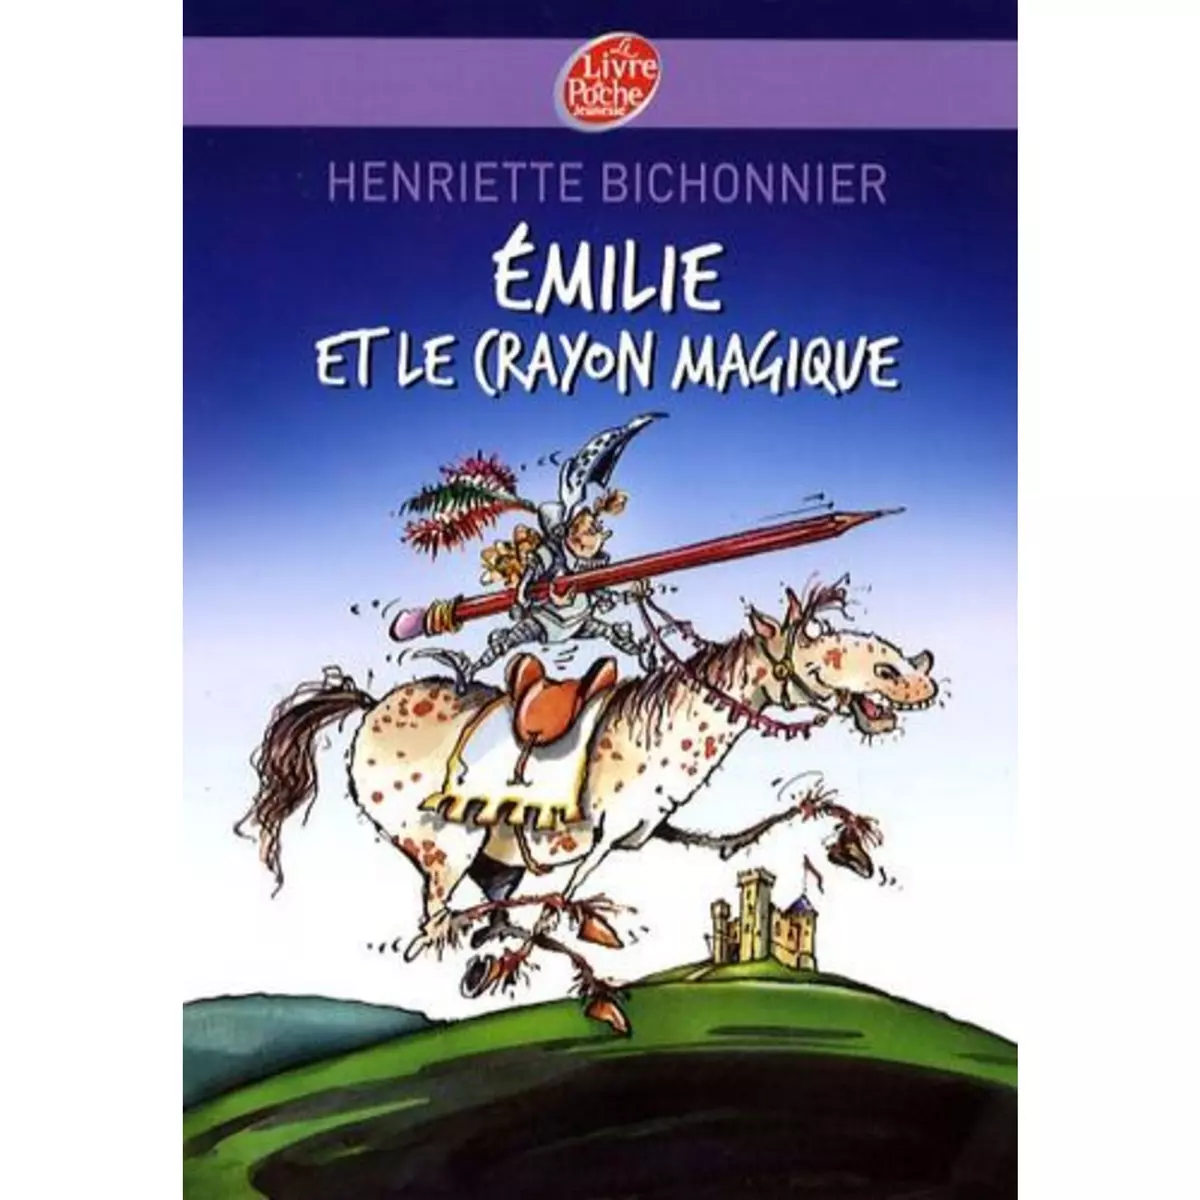  EMILIE ET LE CRAYON MAGIQUE, Bichonnier Henriette